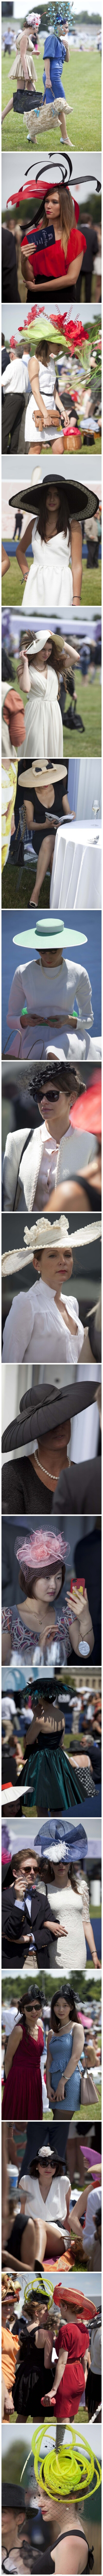 【女士与帽子】Prix de Diane戴安娜大奖赛，尚蒂伊(Chantilly)赛马场上。